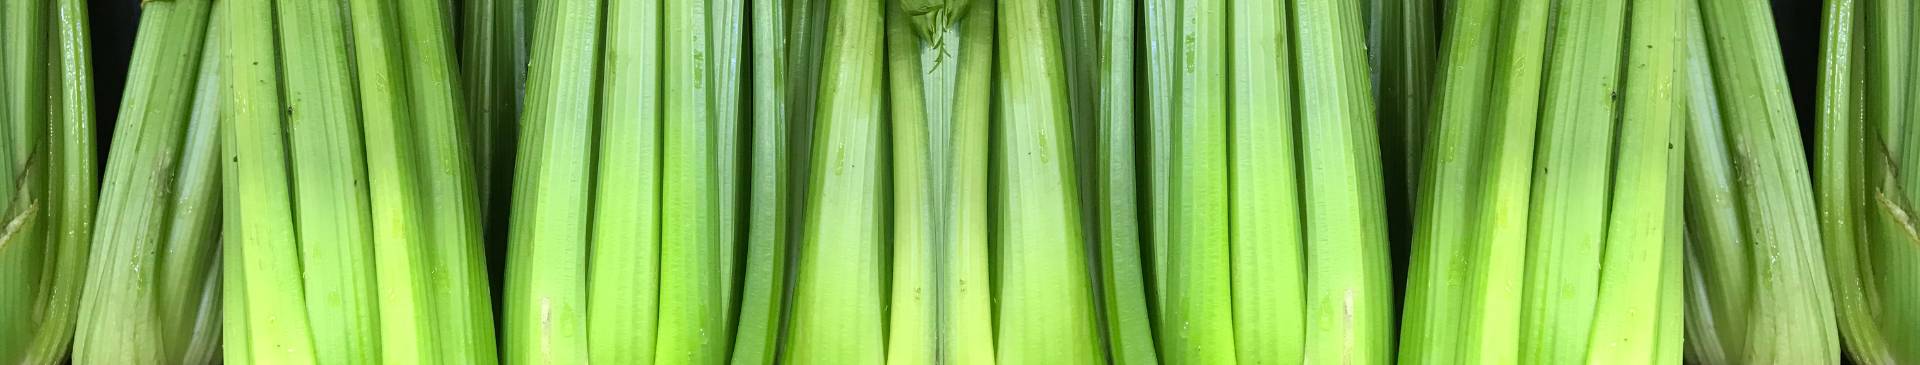 5 Tips for Growing Tender, Juicy Celery